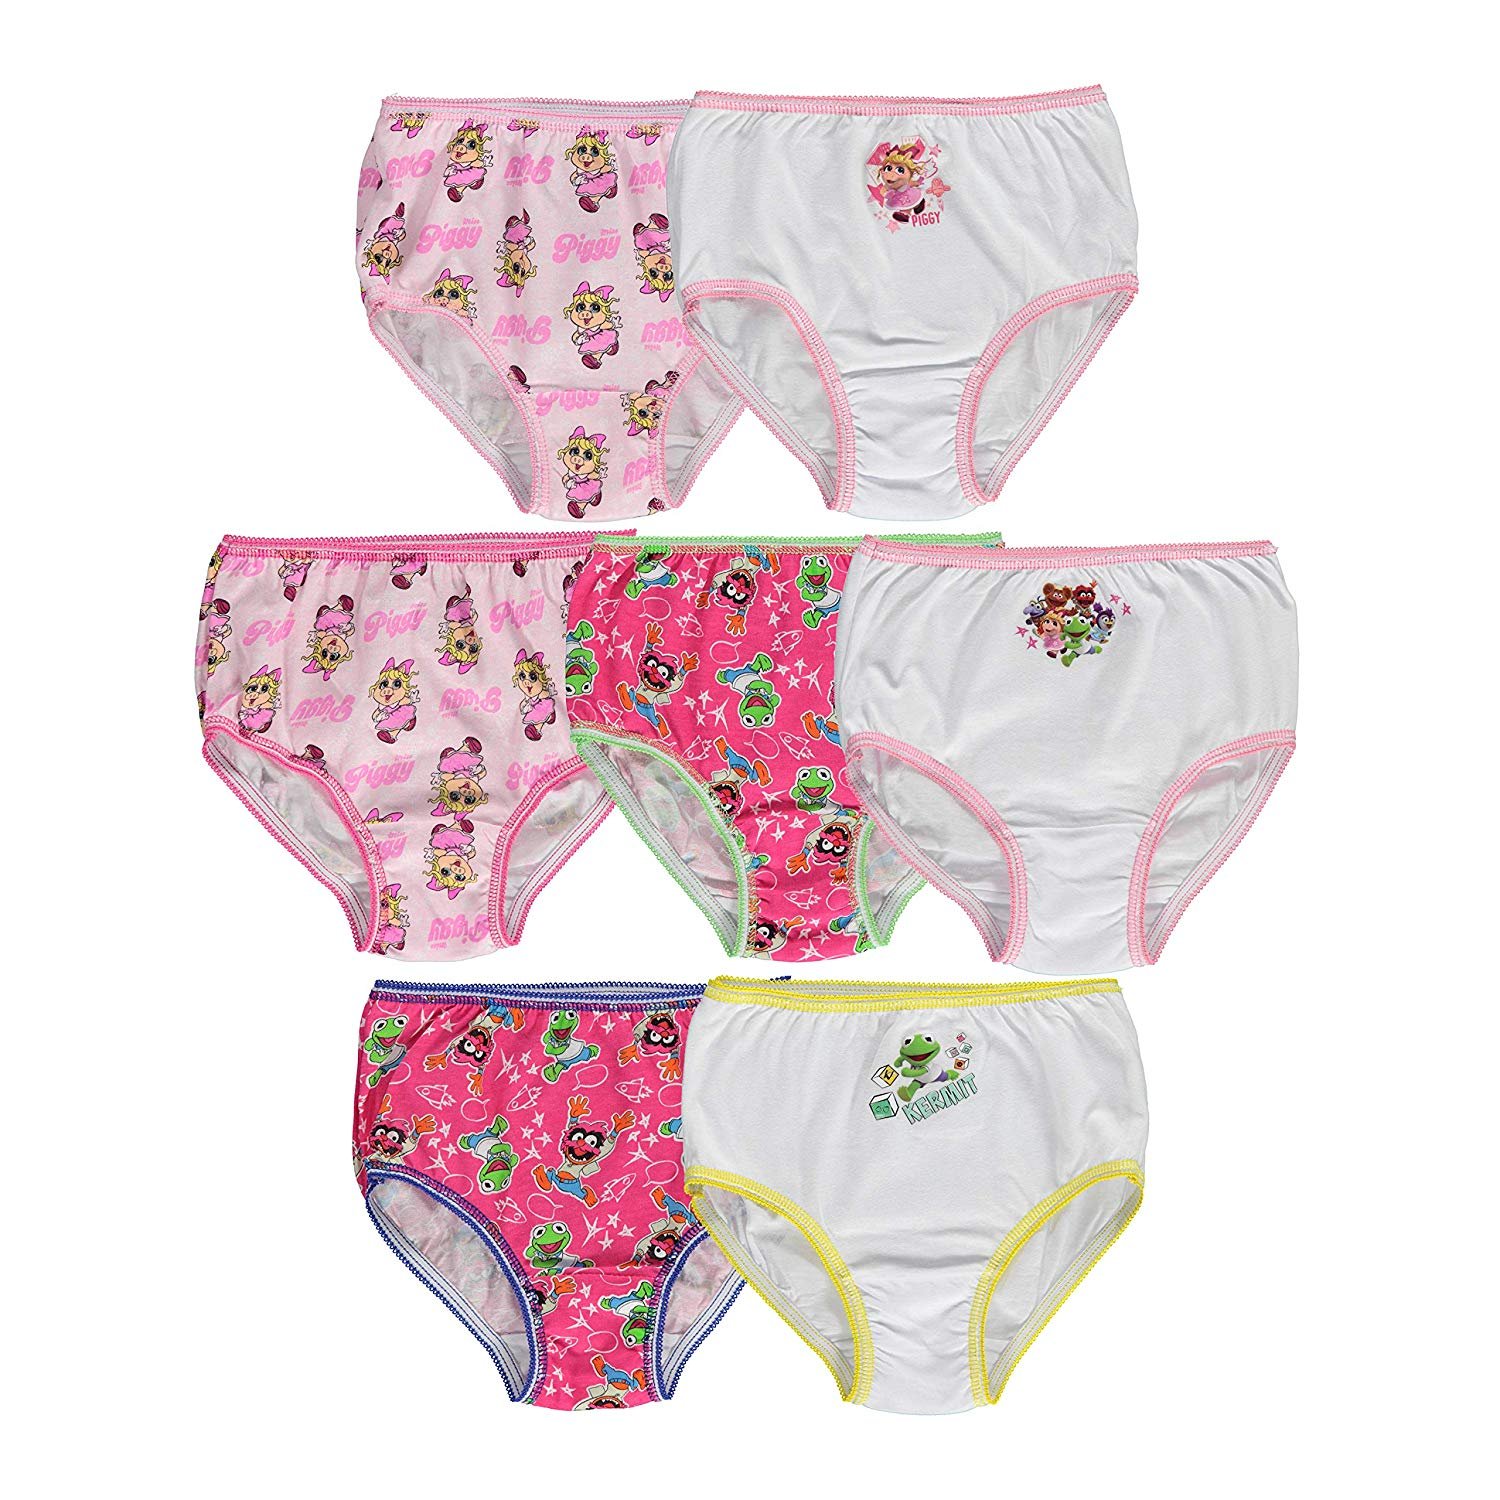 Muppet Babies Girls 7-Pack Underwear Briefs Toddler Little Kid